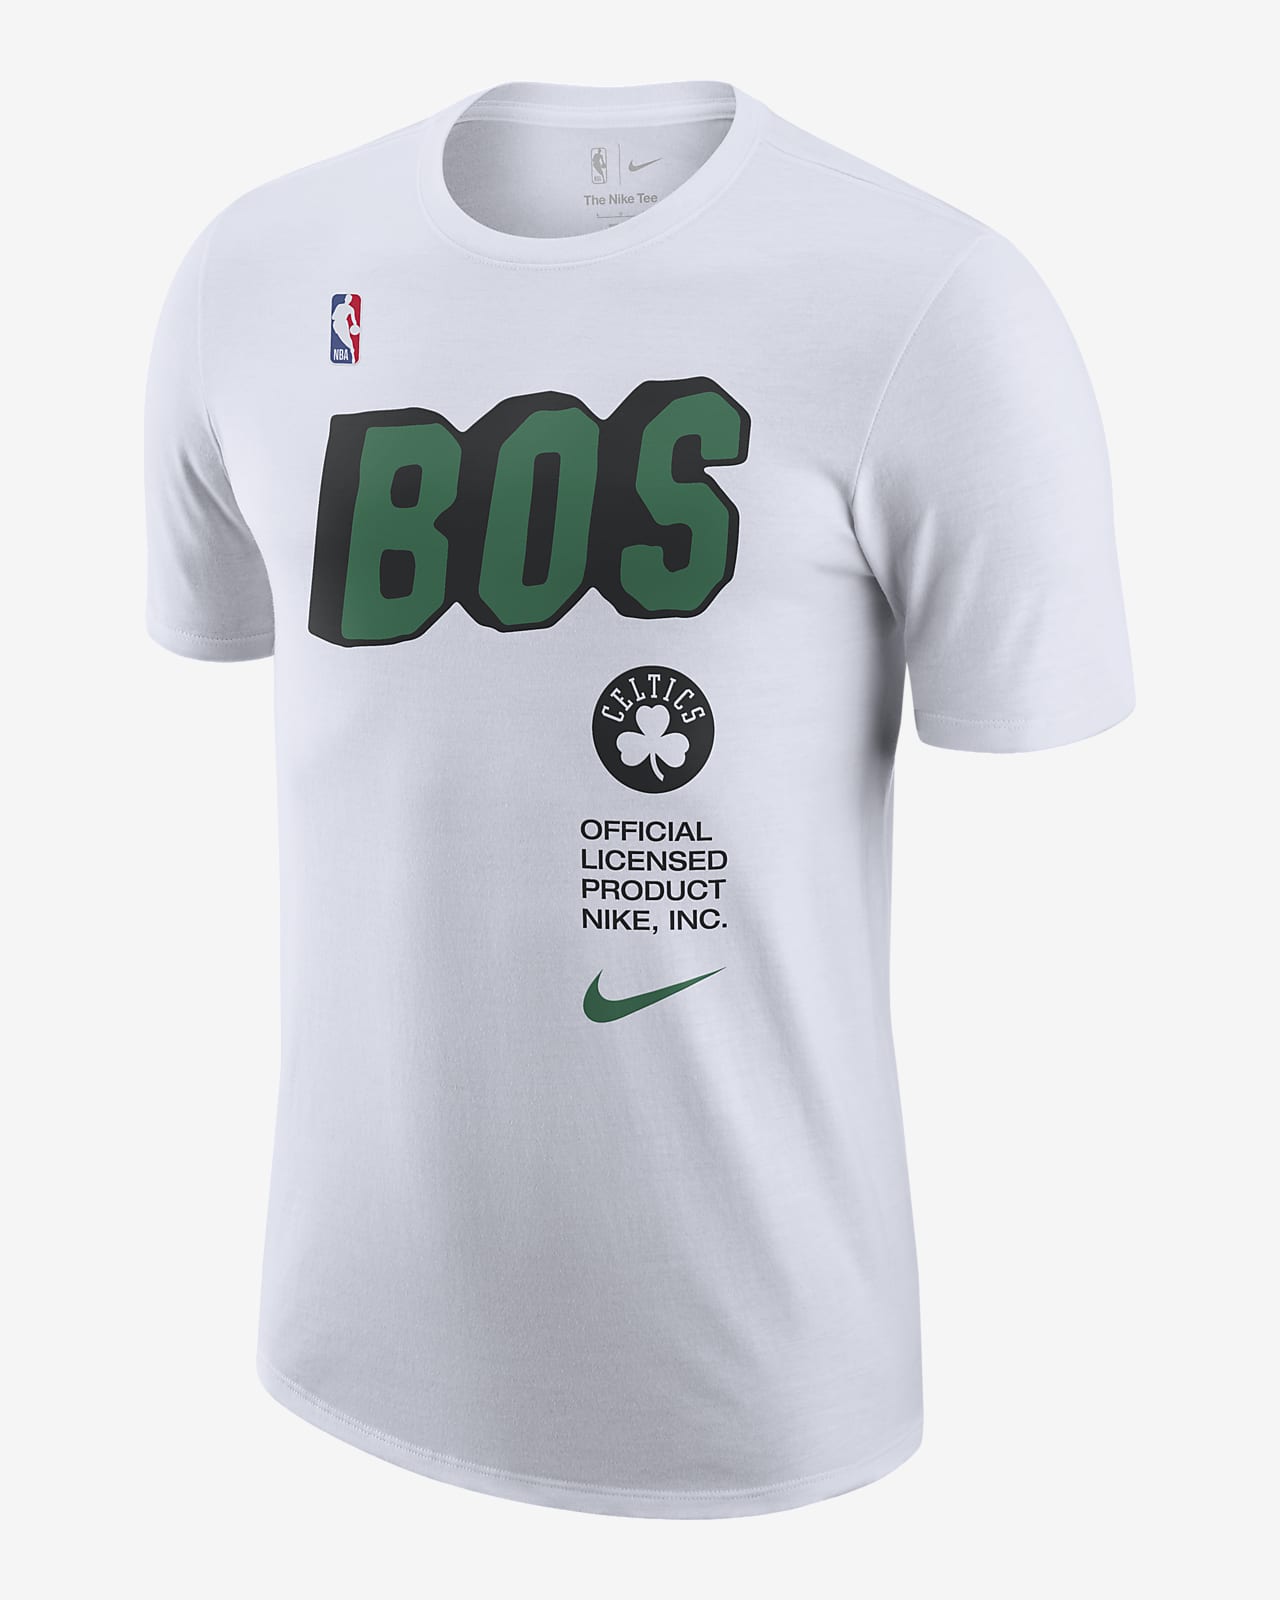 Boston Celtics Men's Nike NBA T-Shirt